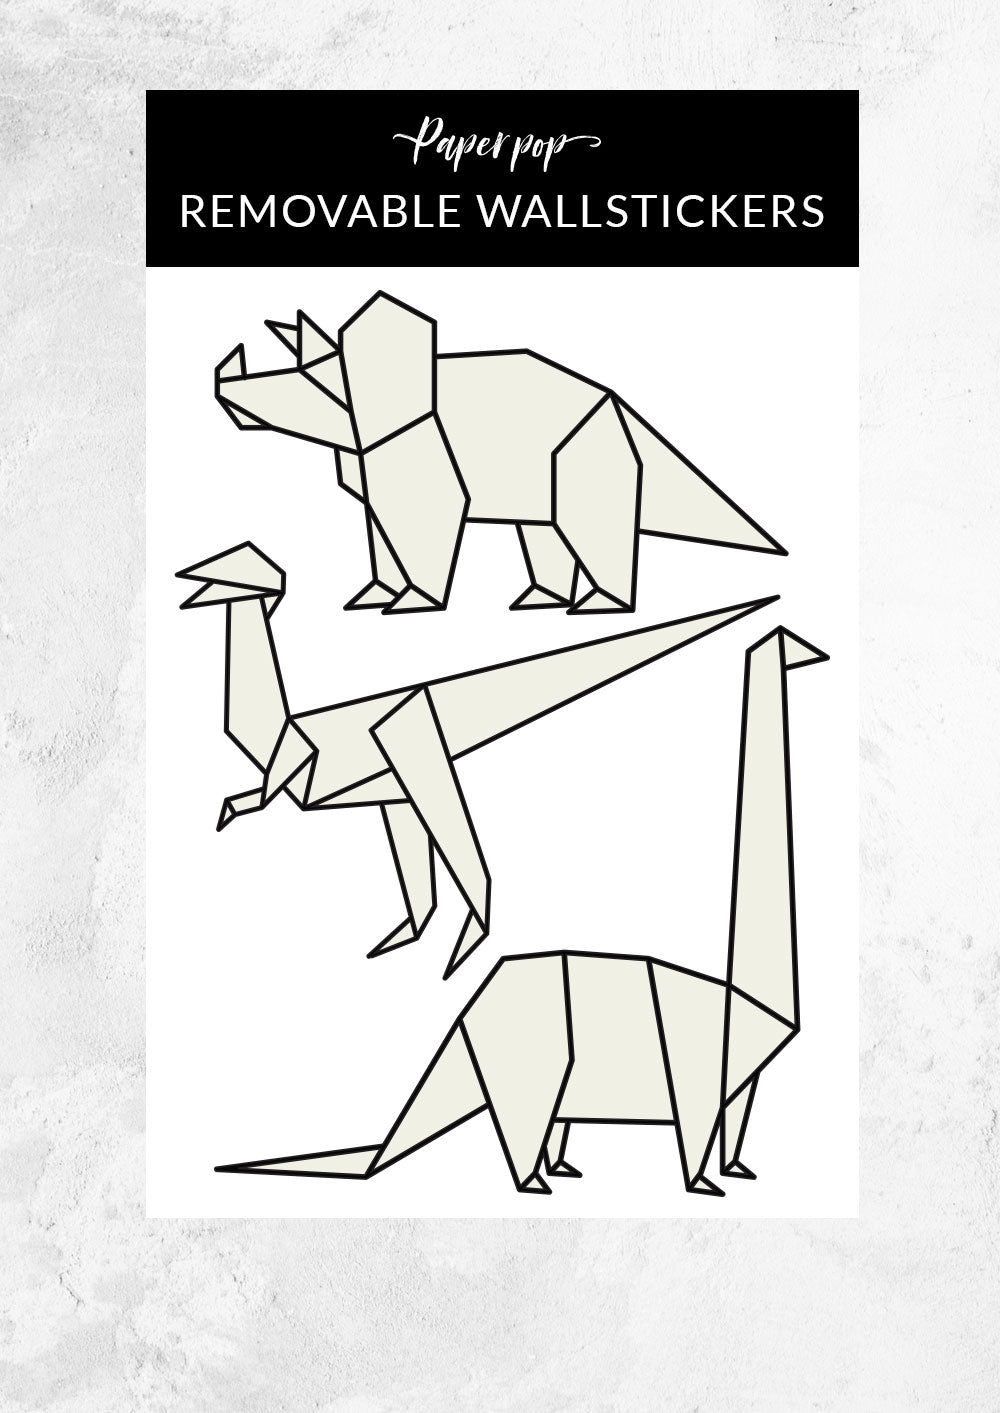 Origami Dinosaur Stickers